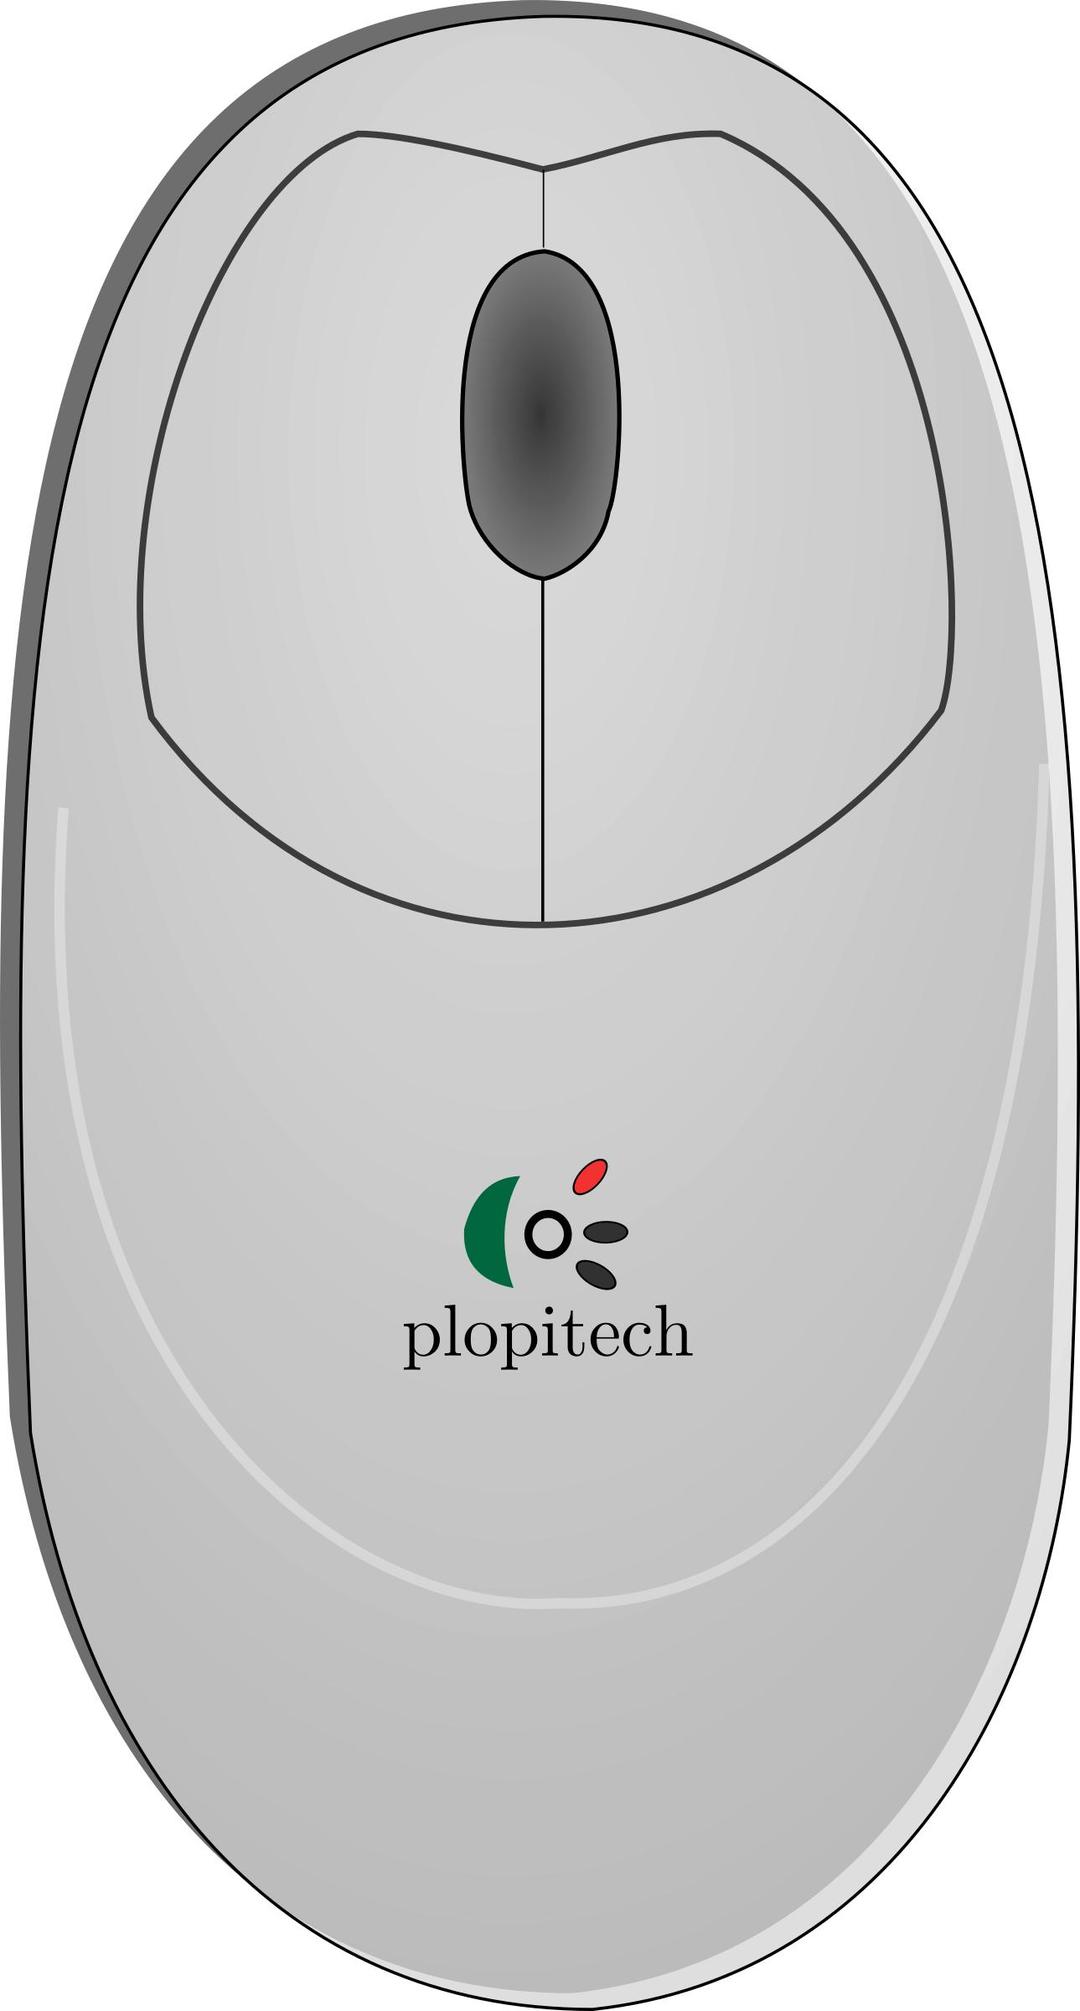 Plopitech mouse png transparent